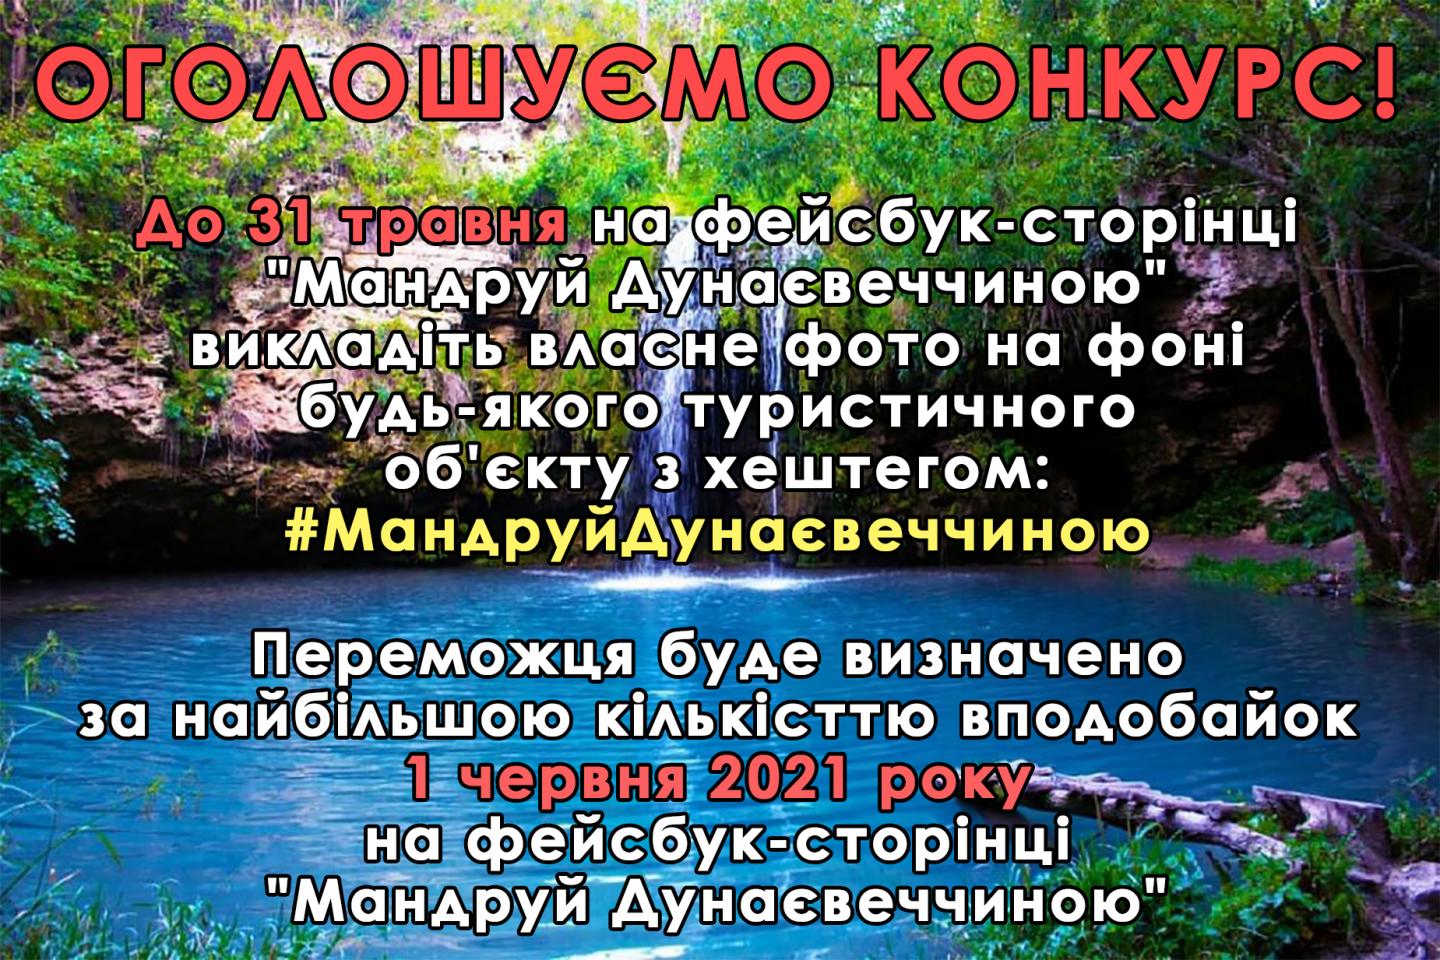 http://dunrada.gov.ua/uploadfile/archive_news/2021/05/11/2021-05-11_533/images/images-27715.jpg